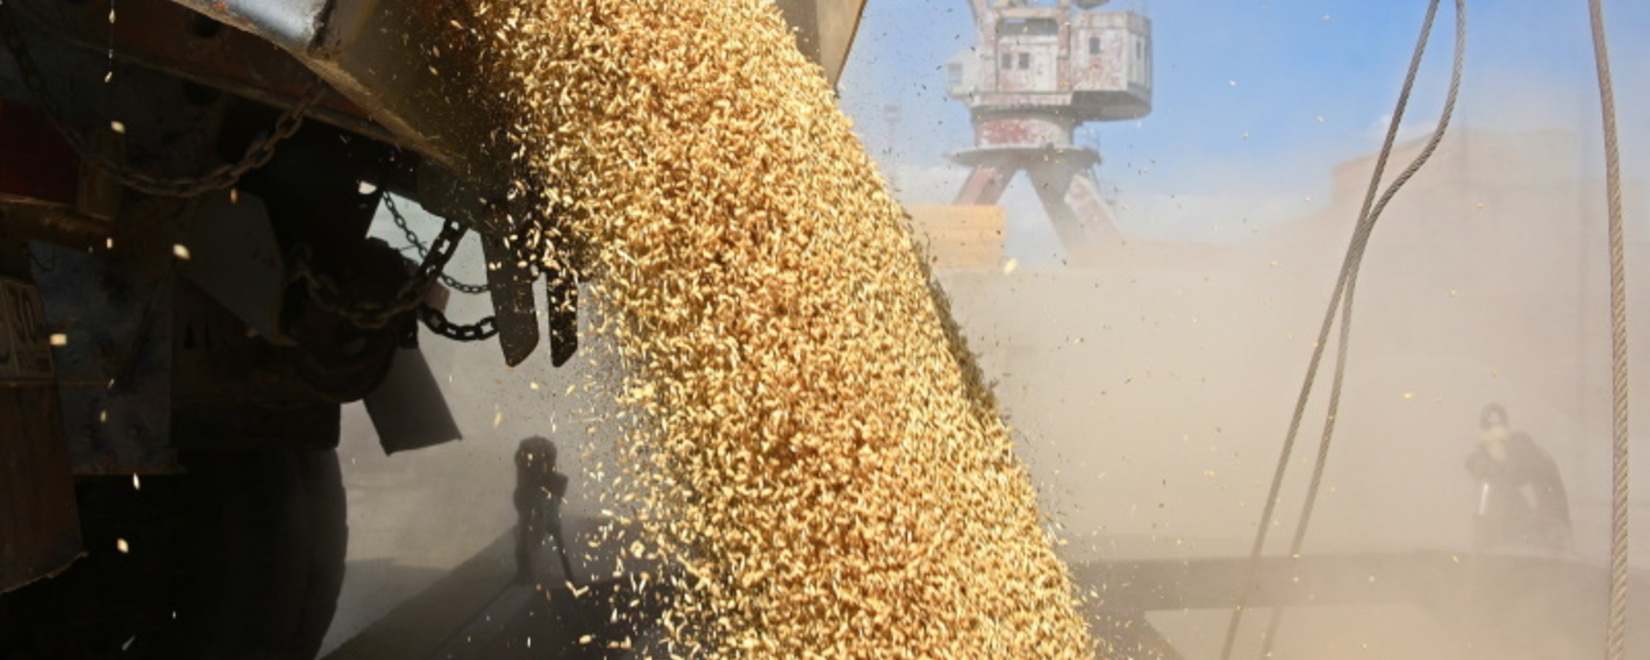 Казахстанские аграрии требуют ввести полный запрет на импорт фуражного зерна из РФ и отменить пошлину на экспорт подсолнечника